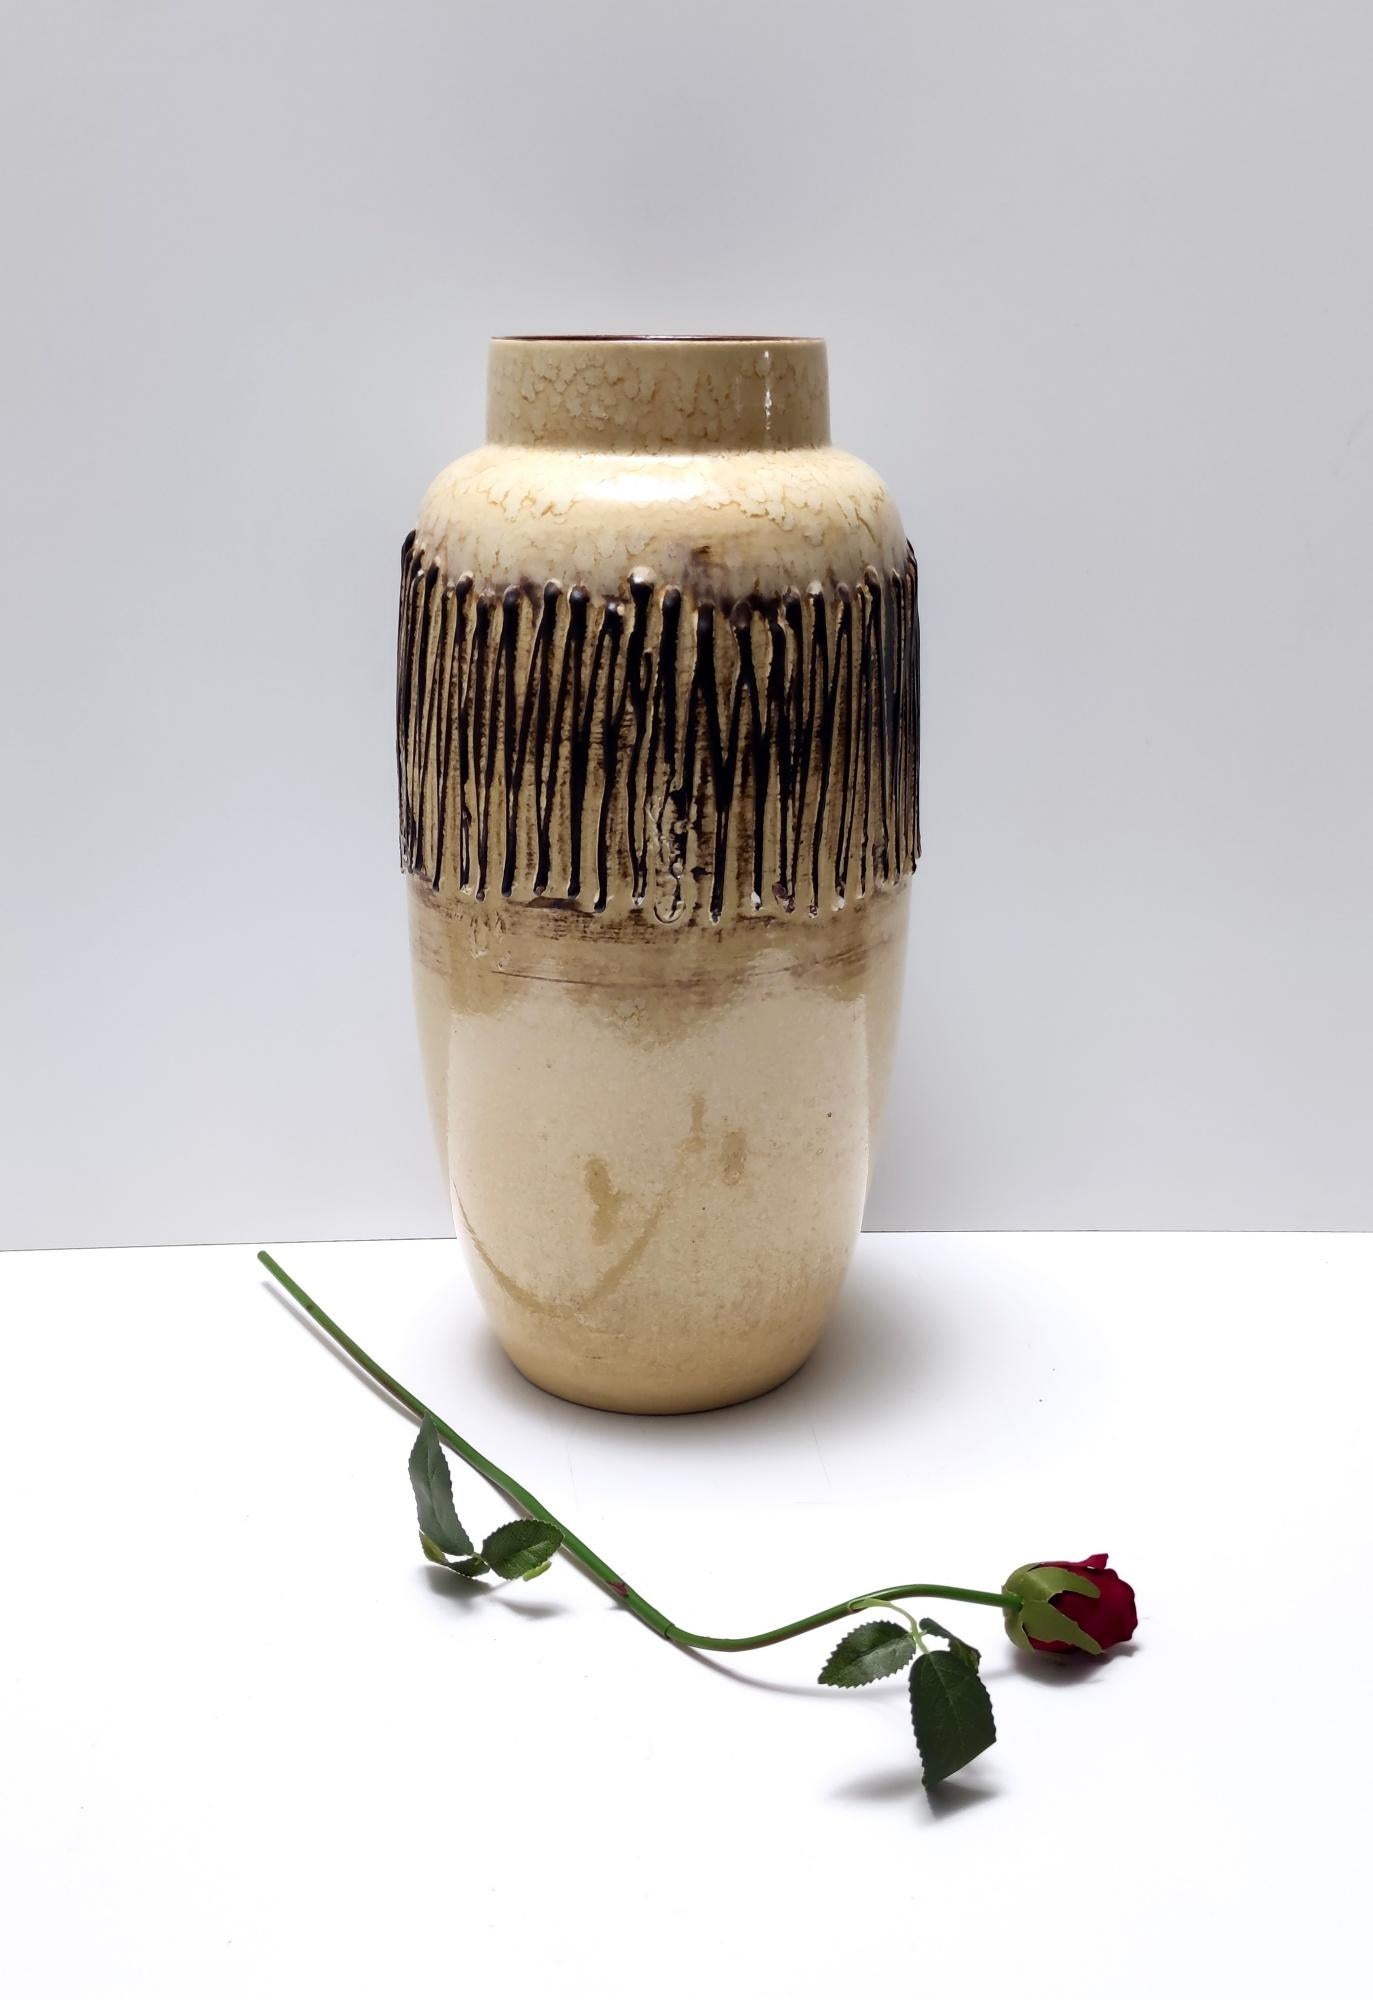 Hergestellt in Deutschland, 1970er Jahre. 
Diese handgefertigte Vase ist aus glasierter Keramik hergestellt.
Da es sich um ein Vintage-Stück handelt, kann es leichte Gebrauchsspuren aufweisen, aber es ist in einem sehr guten Originalzustand und